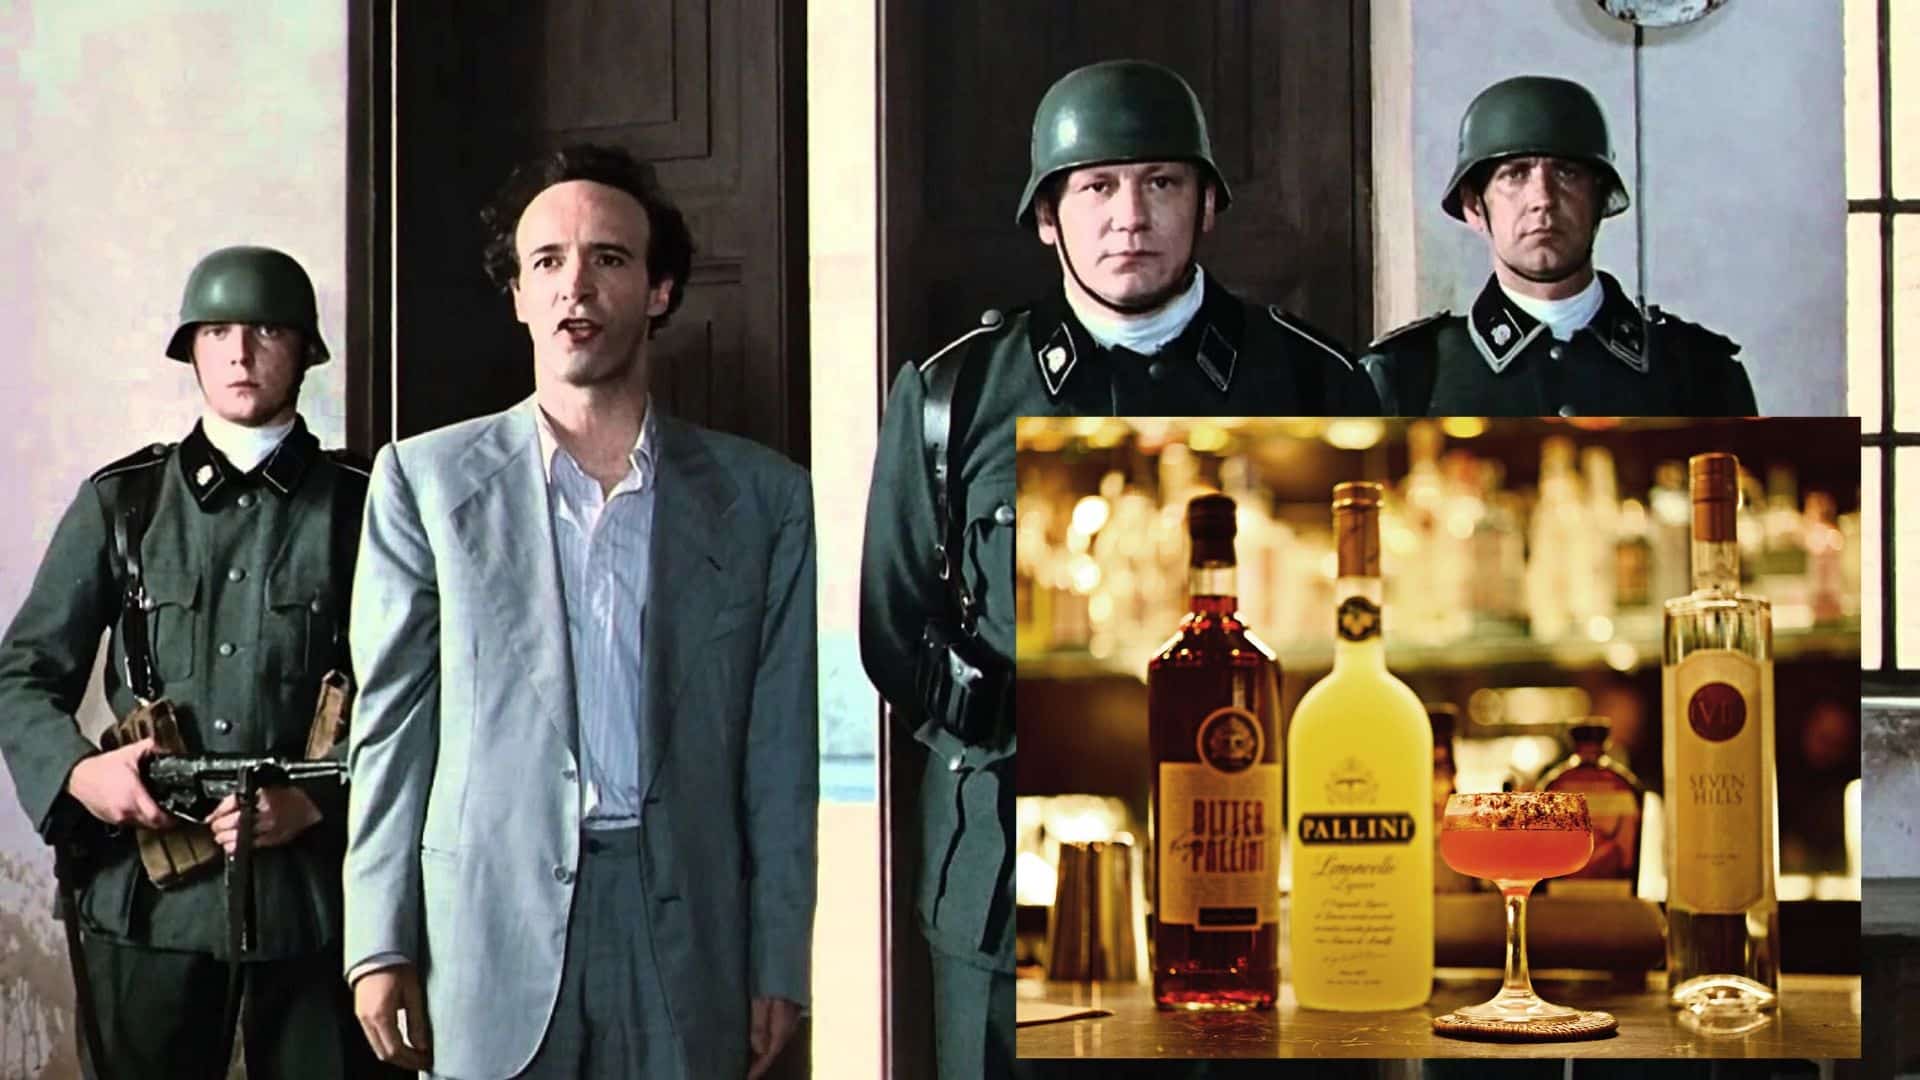 La vita è bella: dal film con Roberto Benigni al drink Carro armato, vero